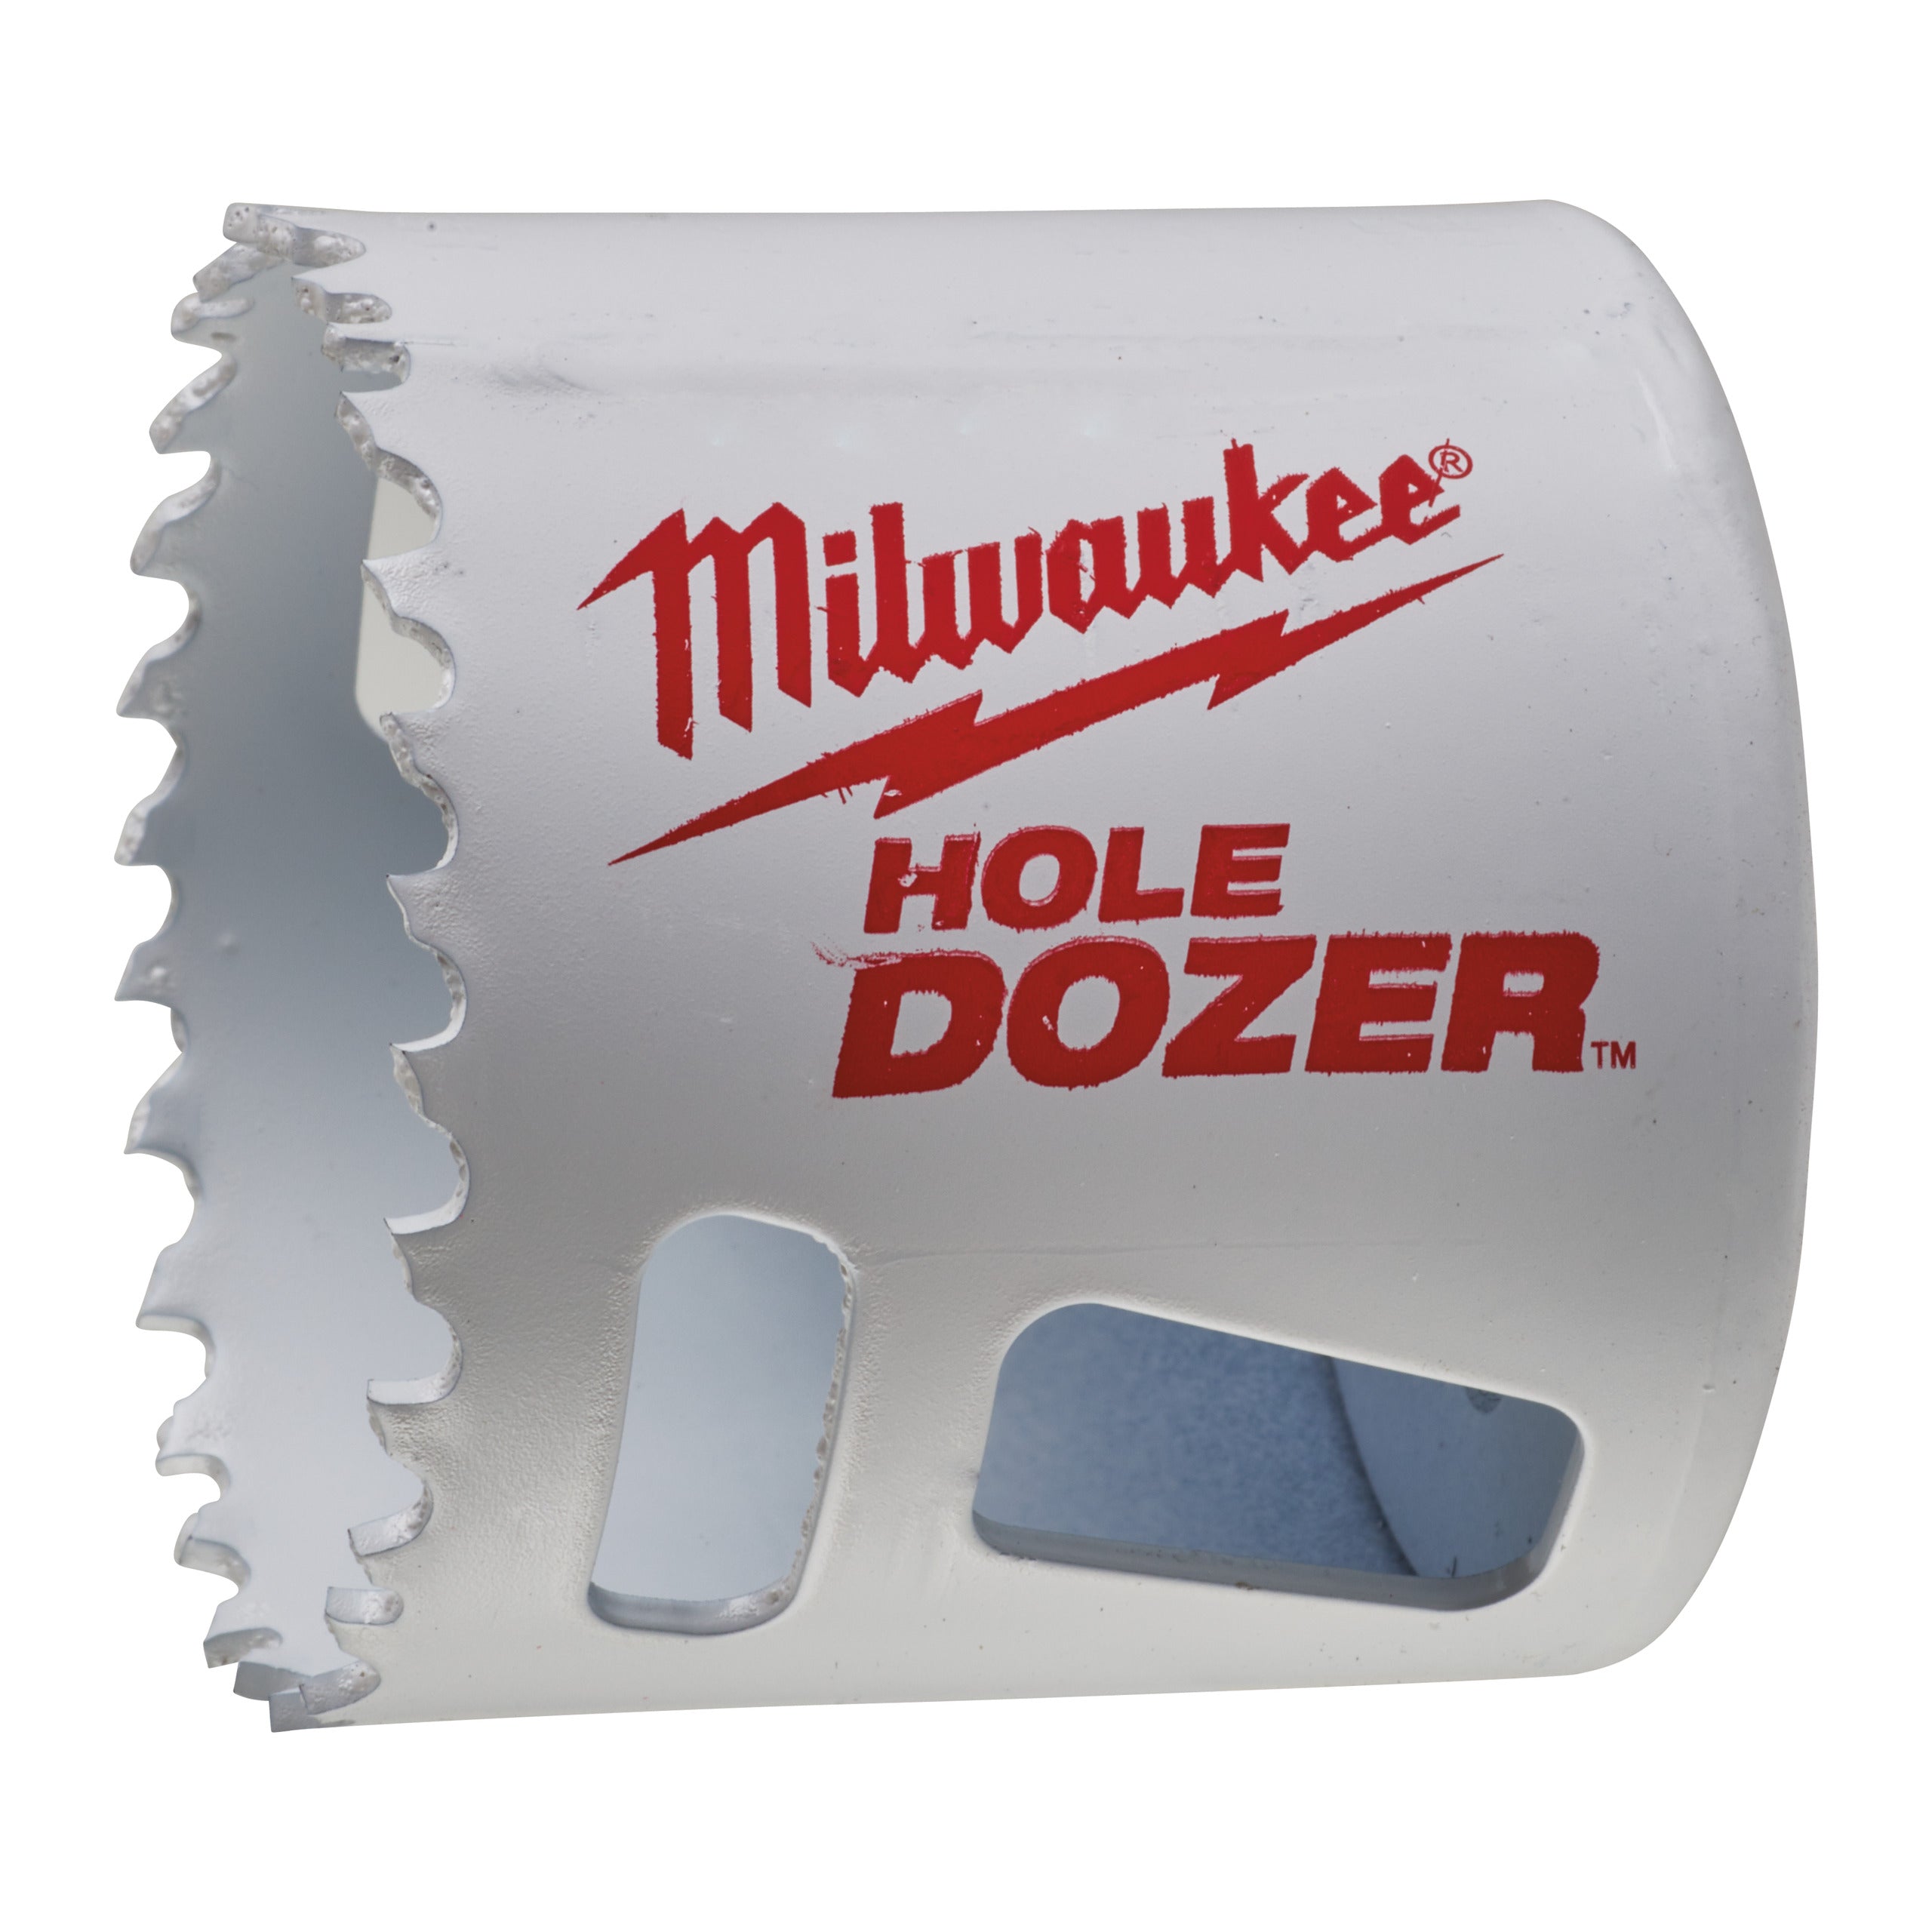 Carotă Milwaukee HOLE DOZER™ bi-metal Ø52 mm 49560122